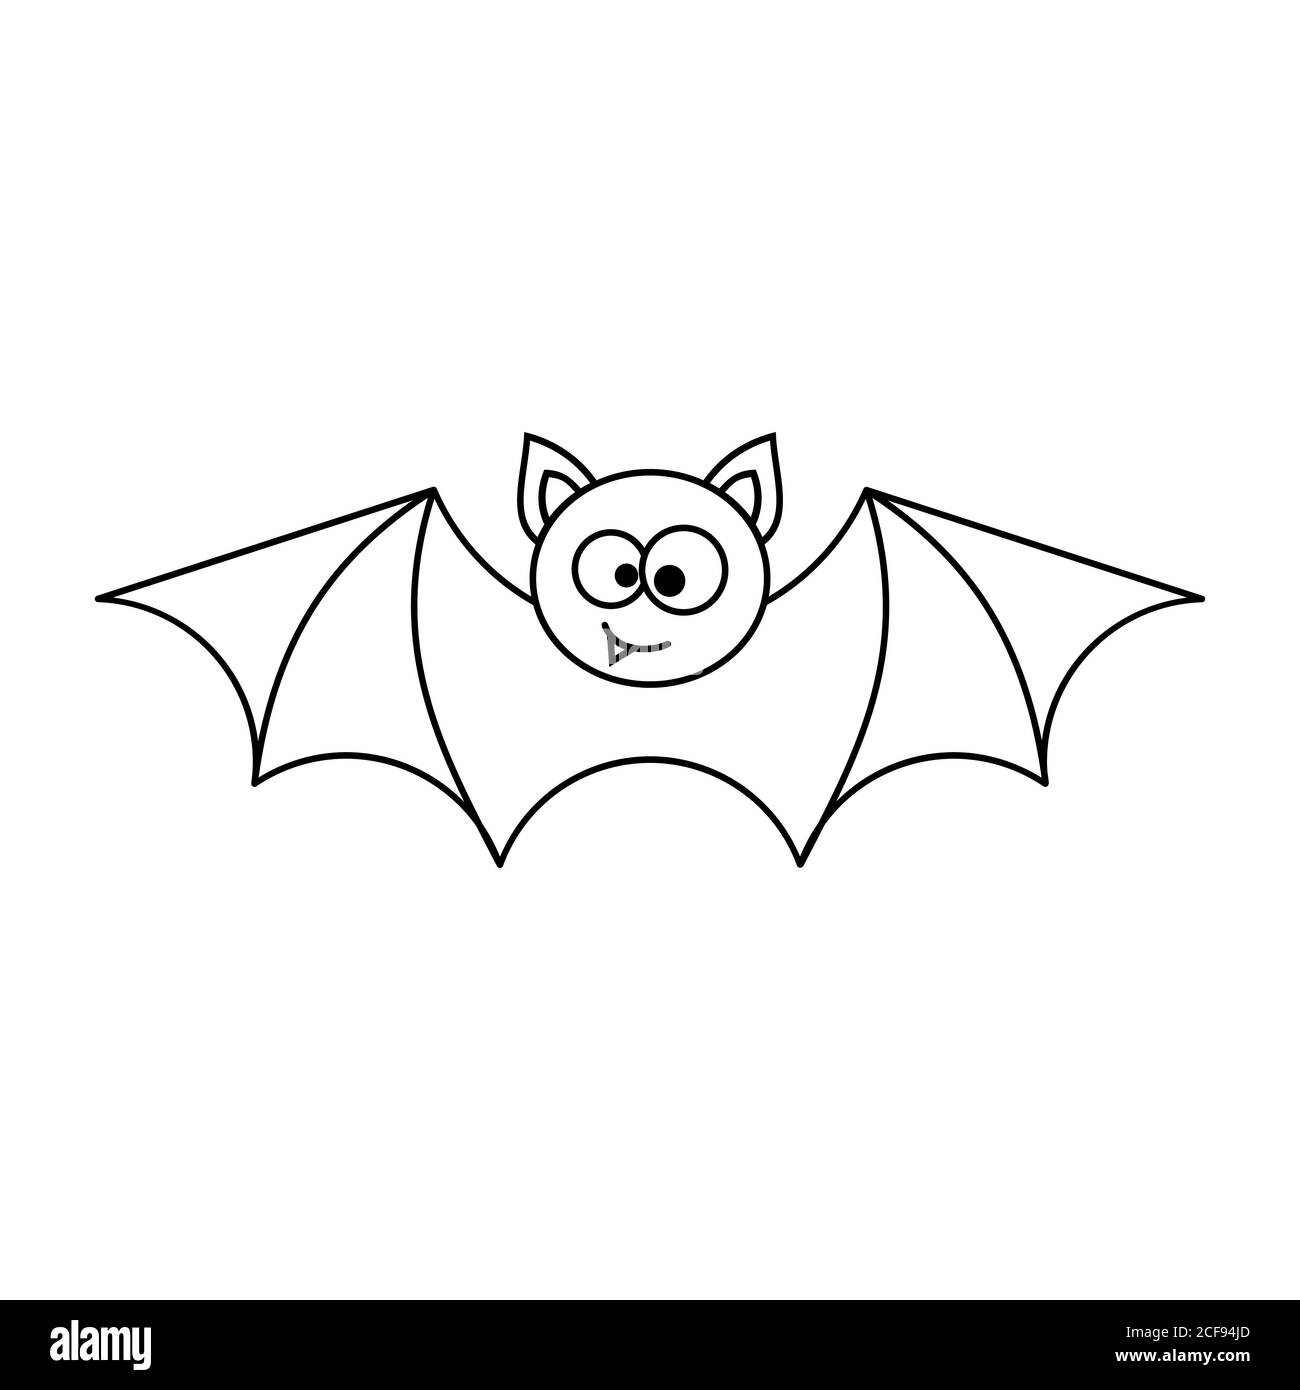 Simpatico pipistrello di Halloween. Doodle illustrazione di un pipistrello  sorridente. Pipistrello con ali spalmabili e viso divertente. Concetto di  Halloween felice. Contorno nero su bianco Immagine e Vettoriale - Alamy